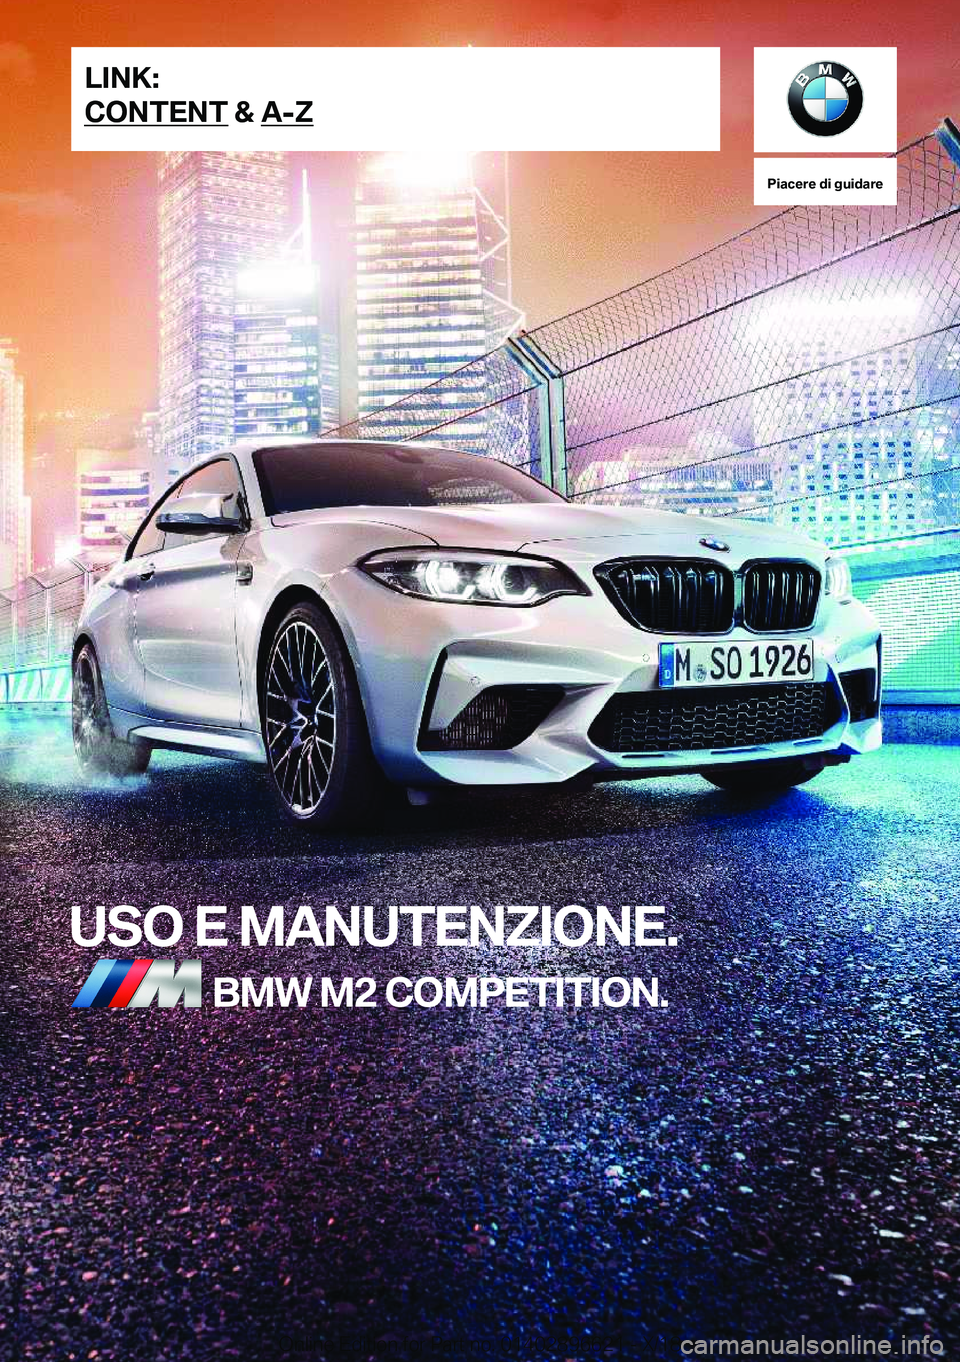 BMW M2 2019  Libretti Di Uso E manutenzione (in Italian) �P�i�a�c�e�r�e��d�i��g�u�i�d�a�r�e
�U�S�O��E��M�A�N�U�T�E�N�;�I�O�N�E�.�B�M�W��M�2��C�O�M�P�E�T�I�T�I�O�N�.�L�I�N�K�:
�C�O�N�T�E�N�T��&��A�-�;�O�n�l�i�n�e��E�d�i�t�i�o�n��f�o�r��P�a�r�t��n